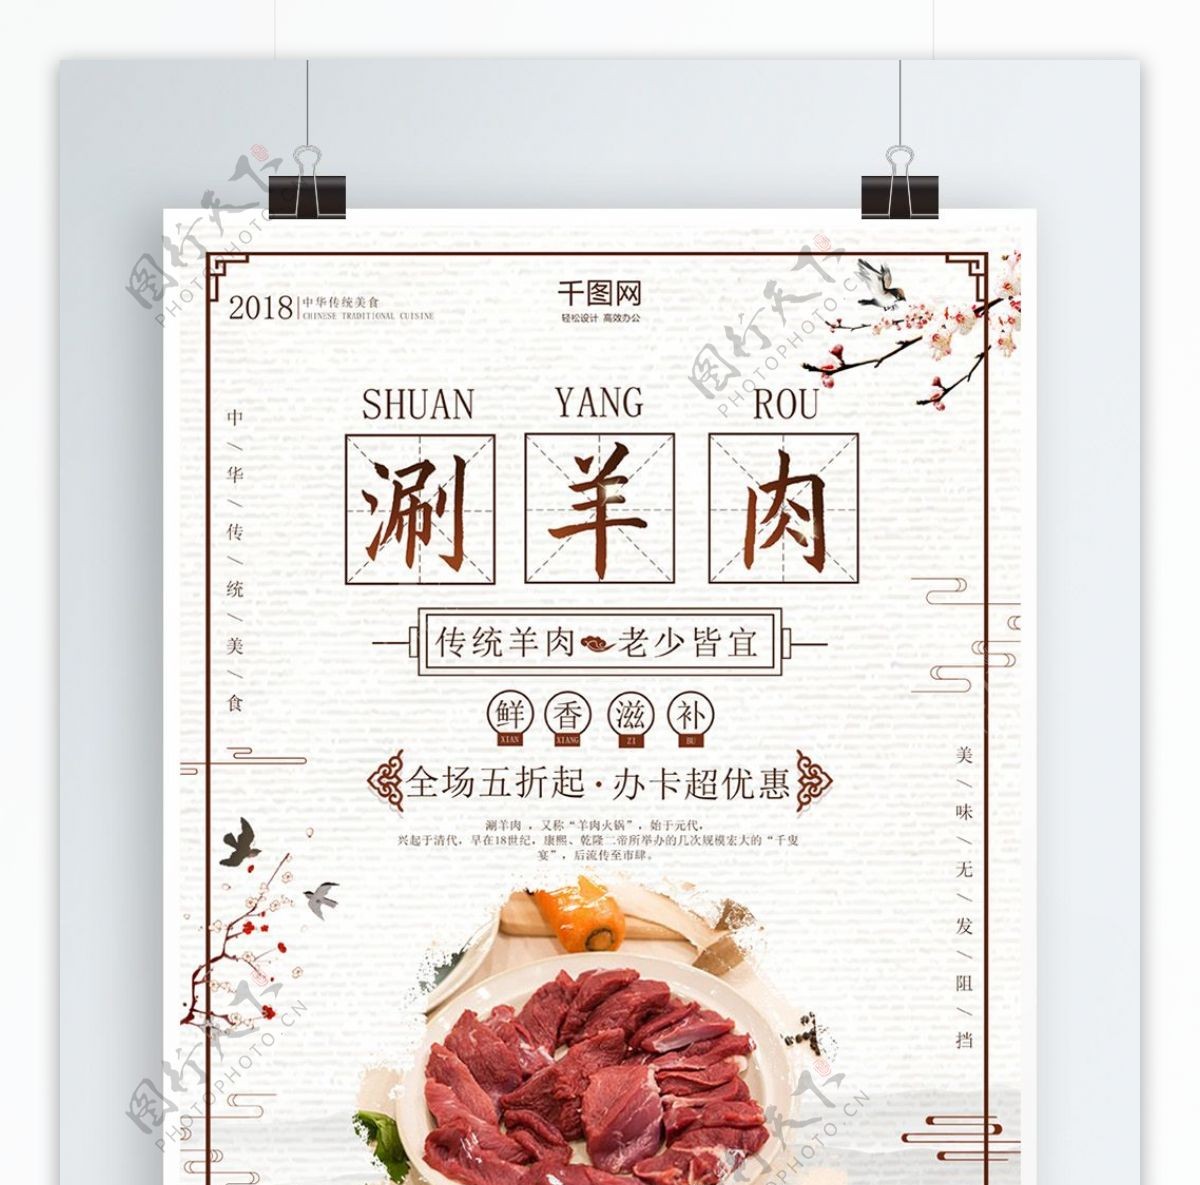 简约淡雅中国风涮羊肉传统美食海报